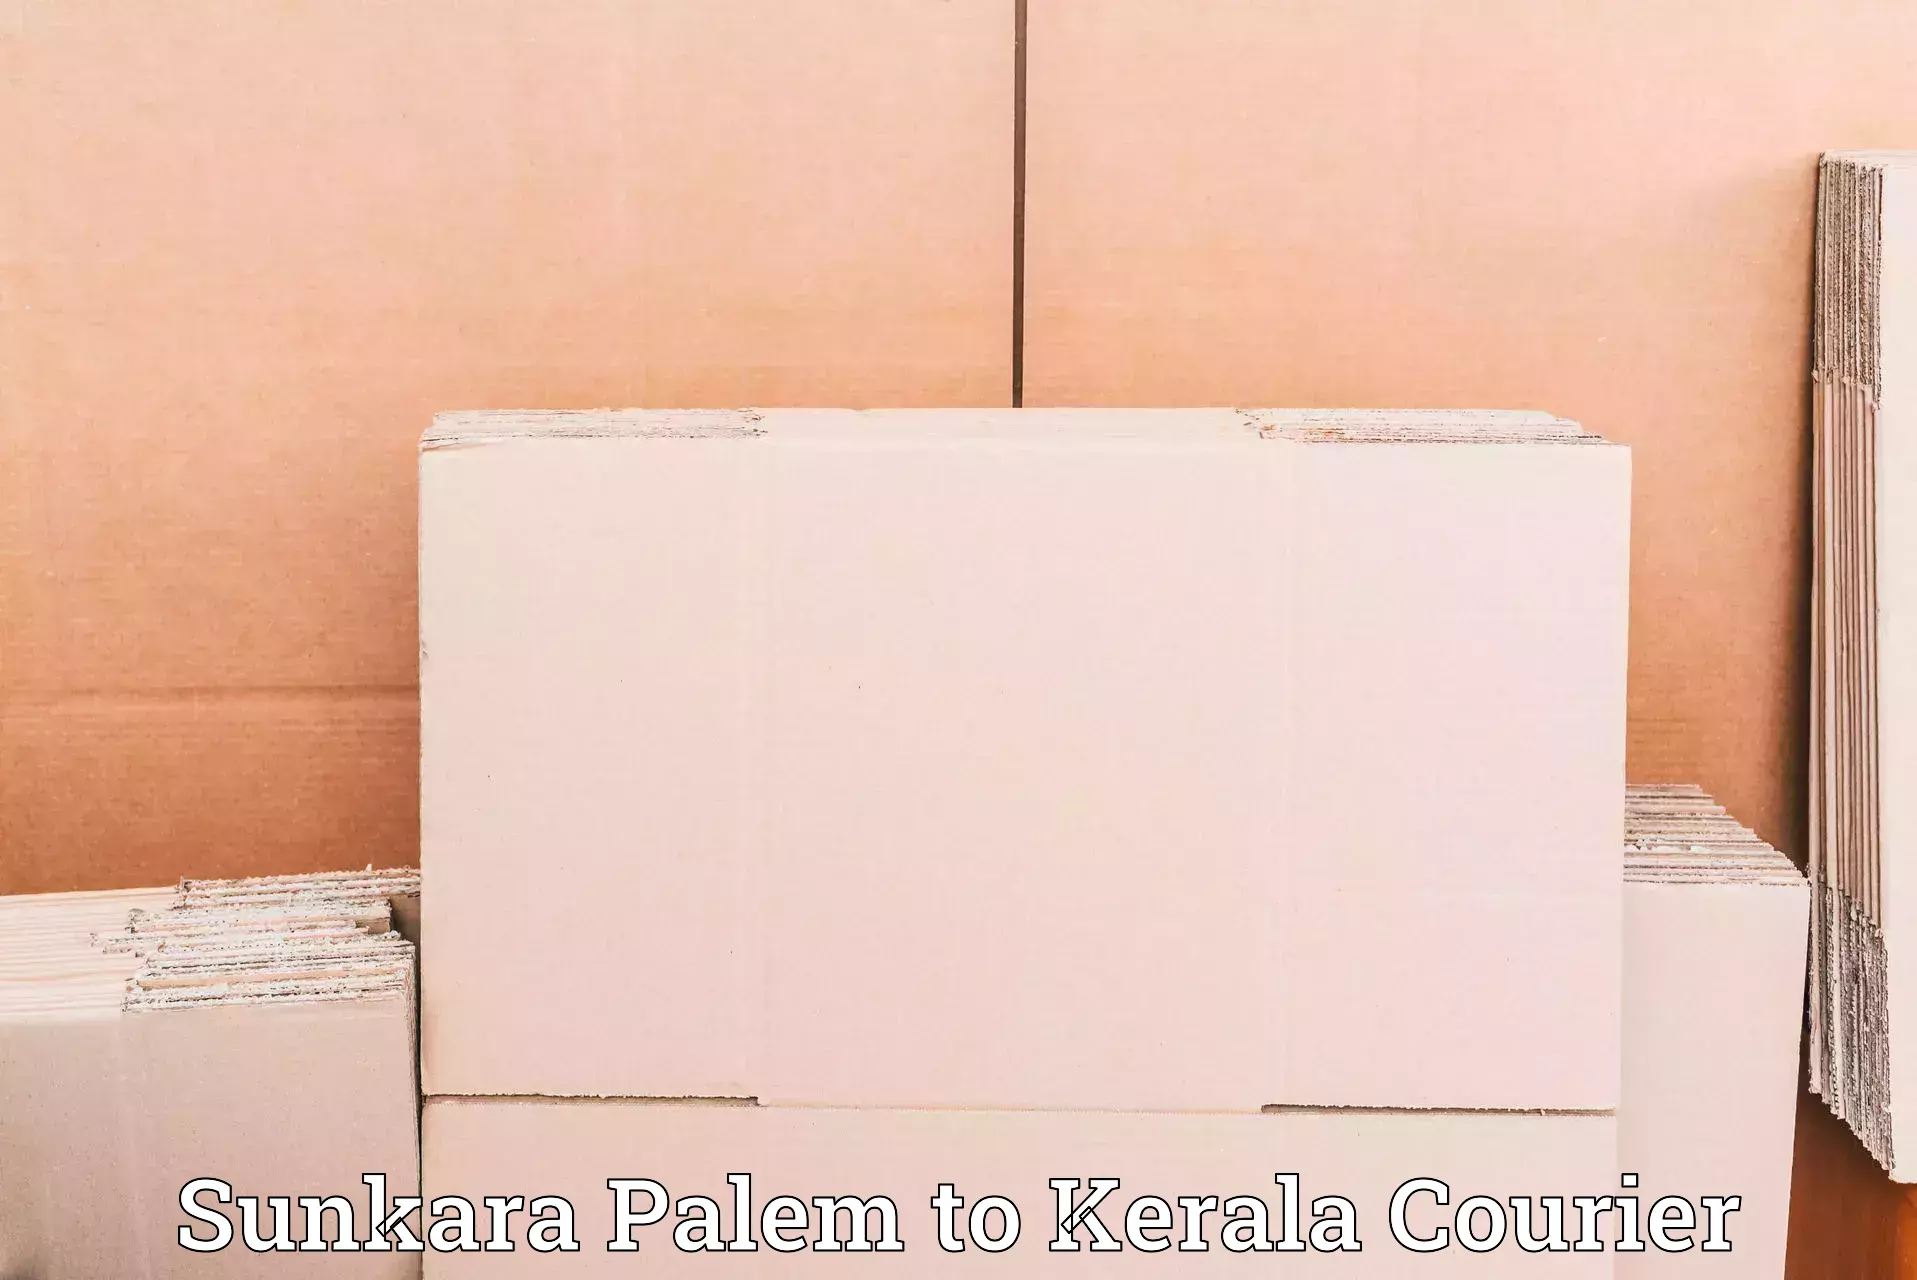 Efficient order fulfillment Sunkara Palem to Kodungallur